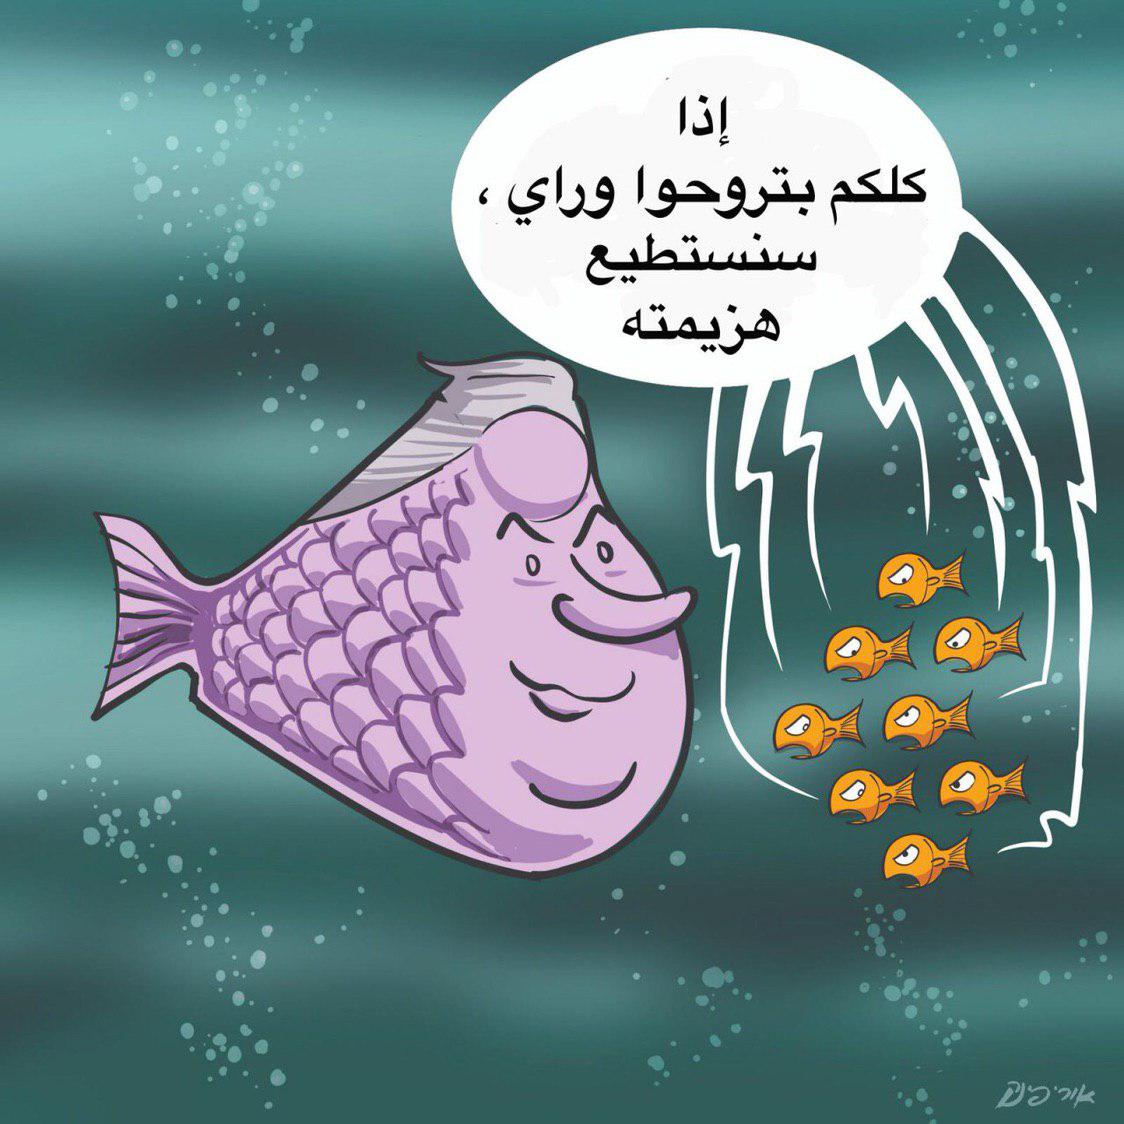 کاریکاتور روز معاریو و حجم بالای اختلافات در عرصه سیاسی اسرائیل+تصویر 2